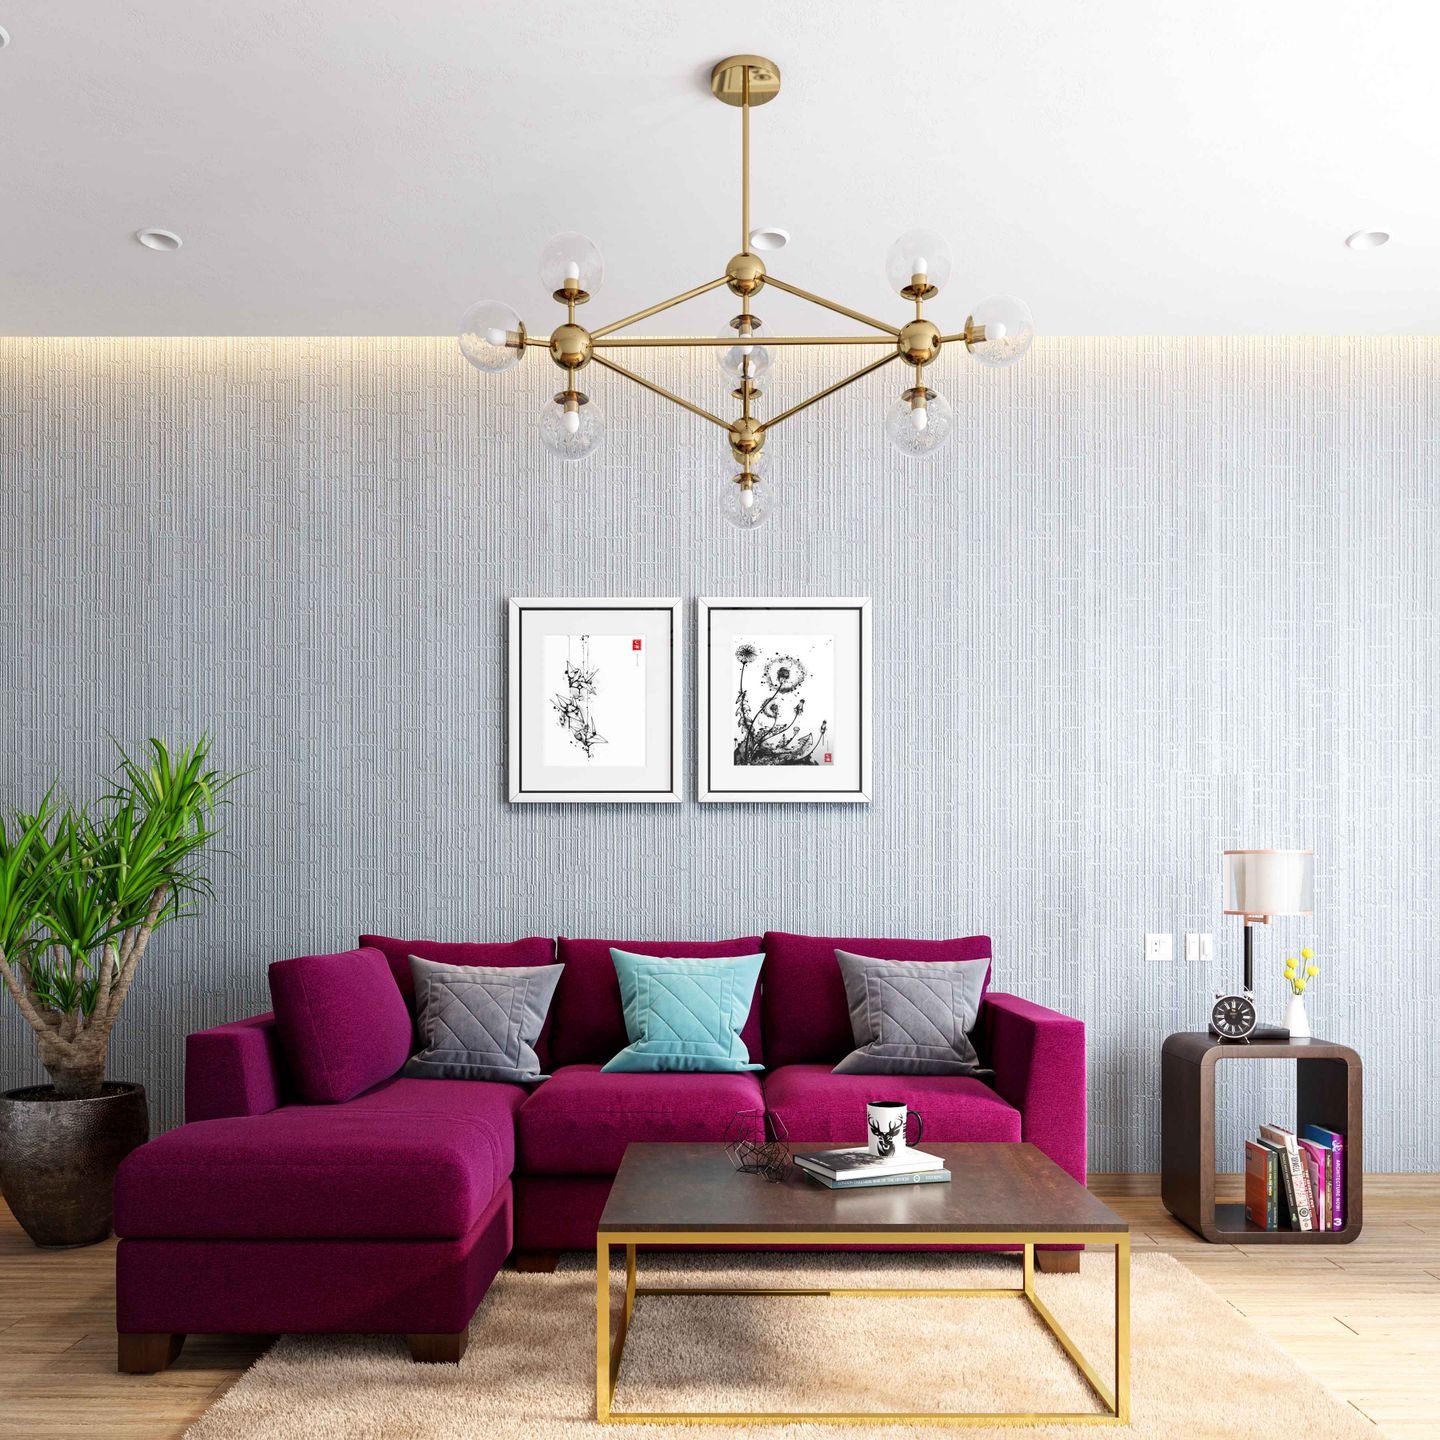 9X7 Ft. White Textured Wallpaper Design For Living Rooms - Livspace